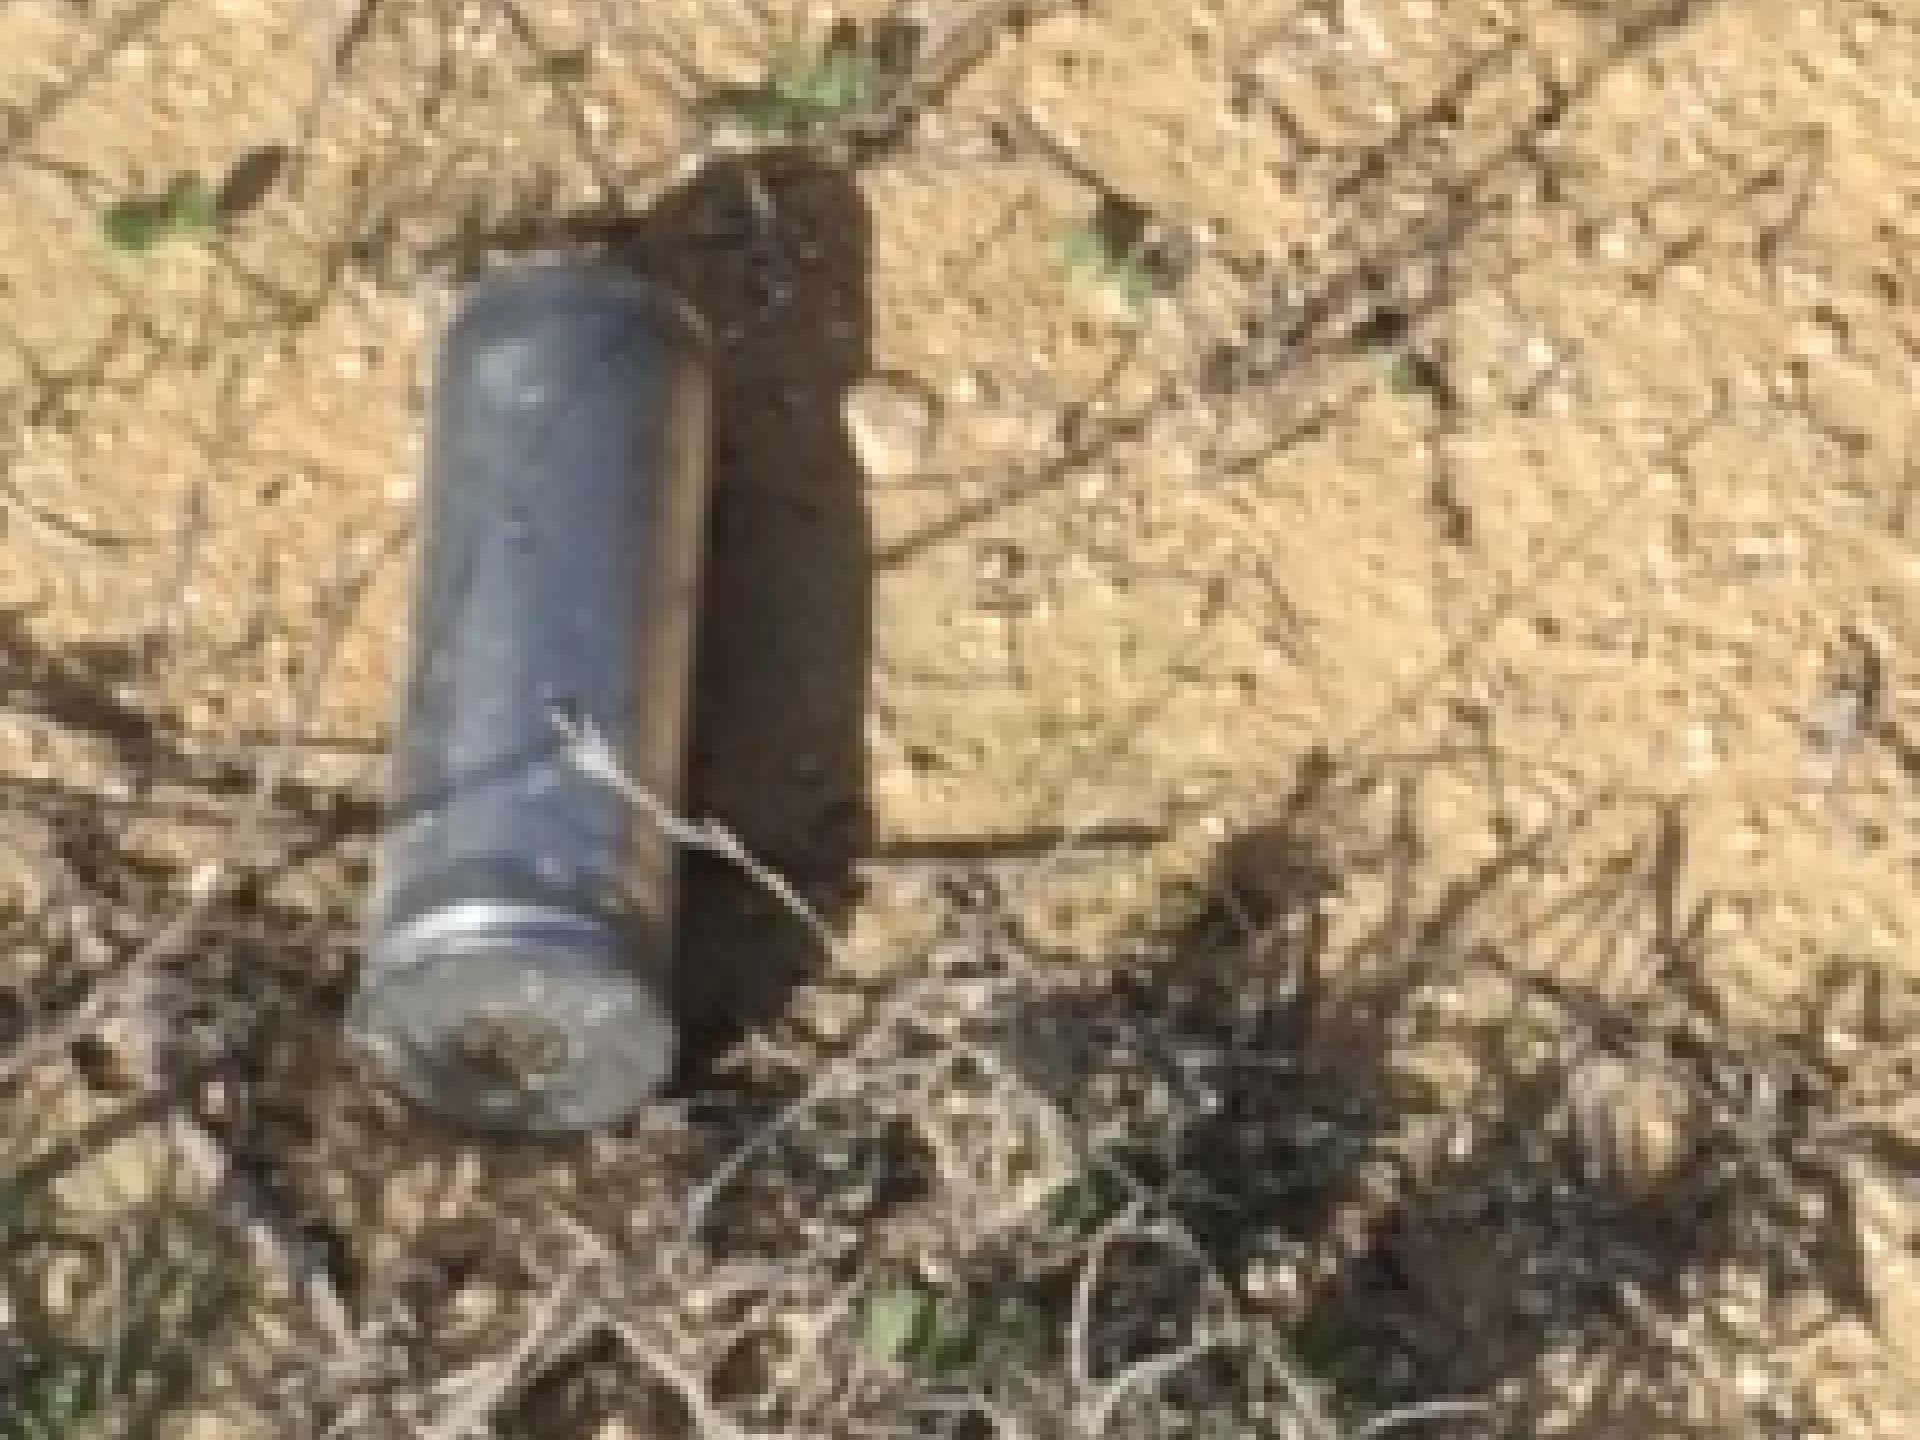 Tear gas canister